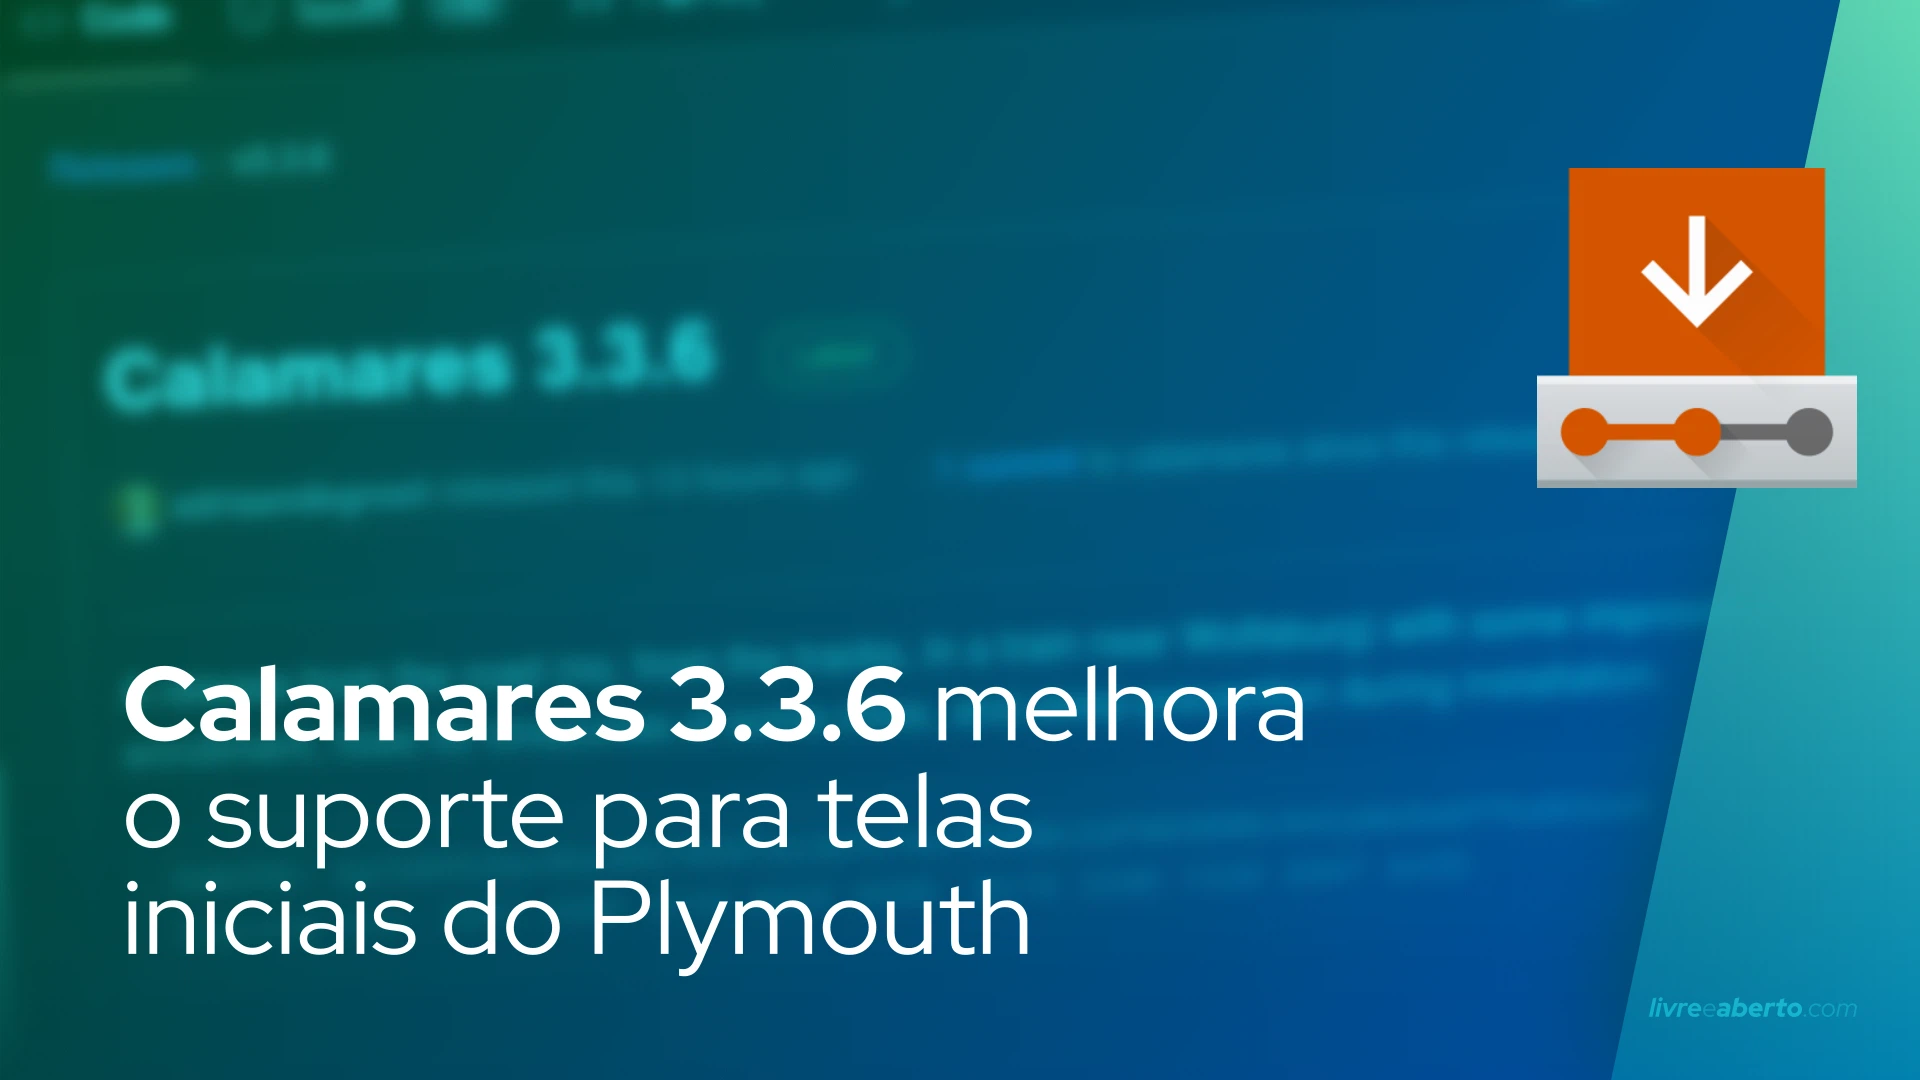 Calamares 3.3.6 melhora o suporte para telas iniciais do Plymouth